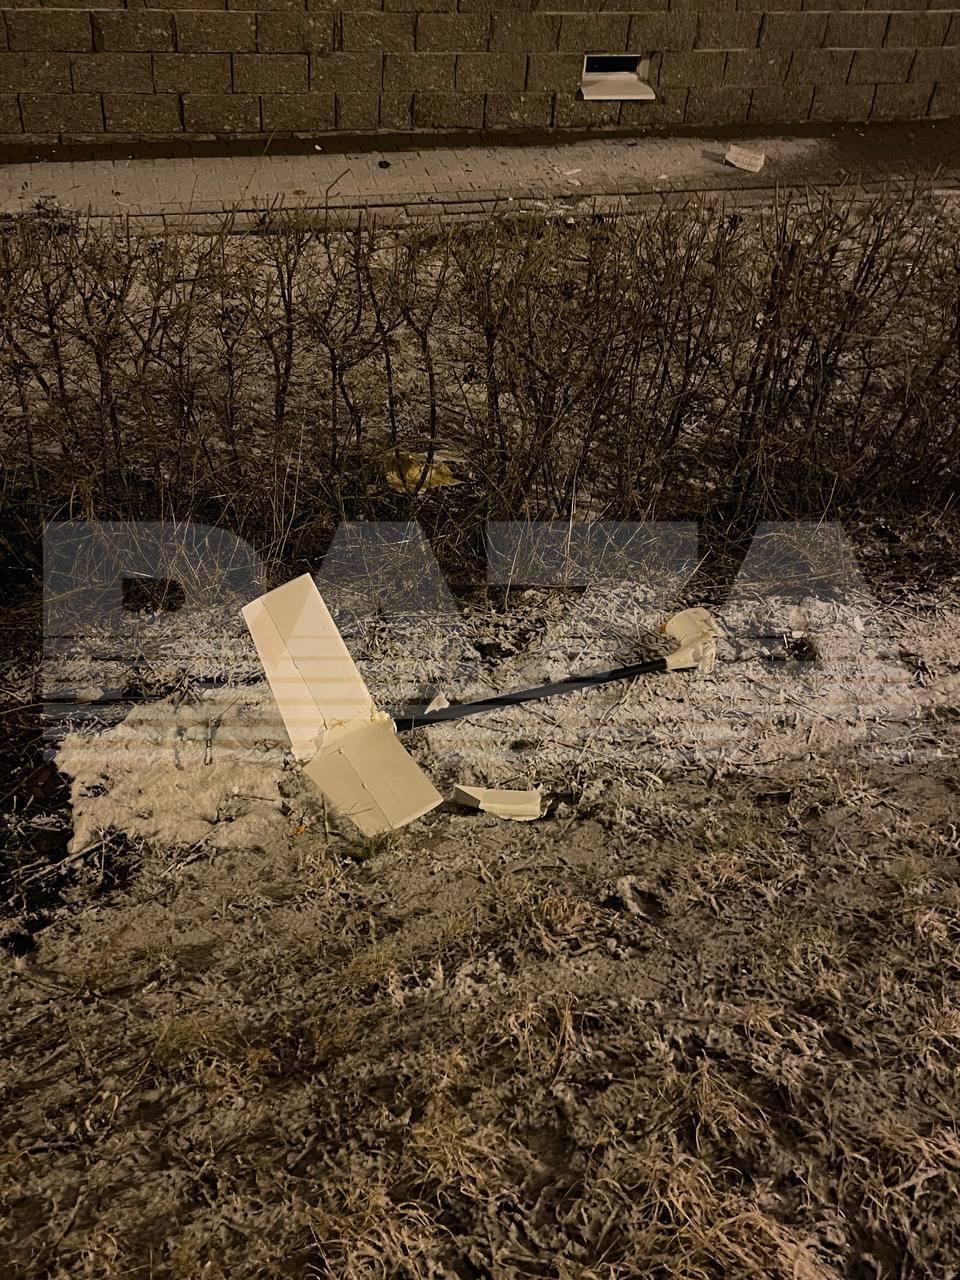 Drone prăbuşite în Belgorod, Rusia